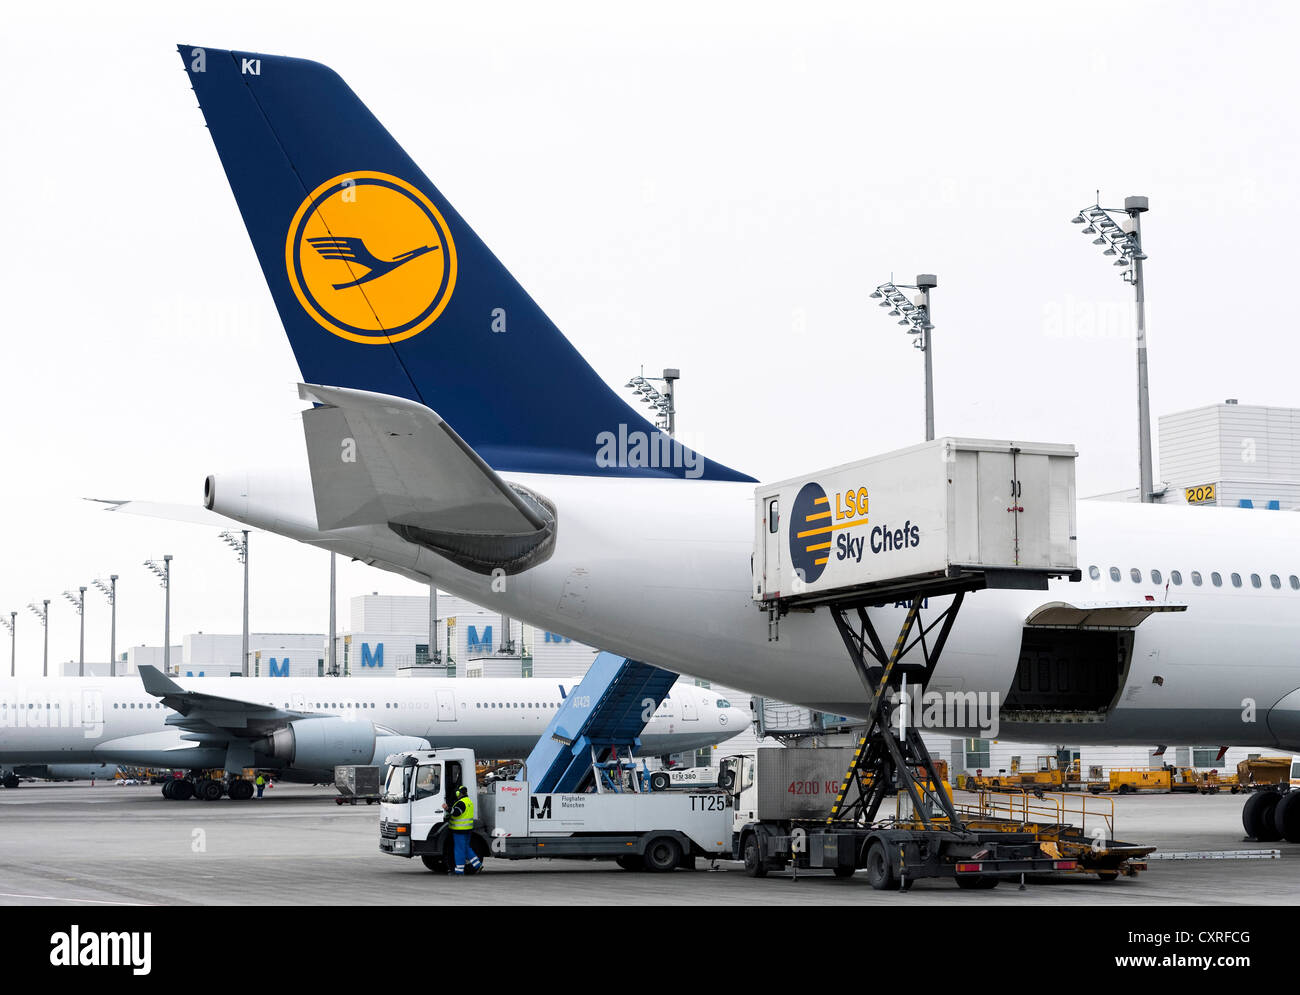 Aereo Lufthansa essendo alimentata con disposizioni da parte dei dipendenti delle società di servizio LSG Sky - Capi al Terminal 2 di Monaco di Baviera Foto Stock